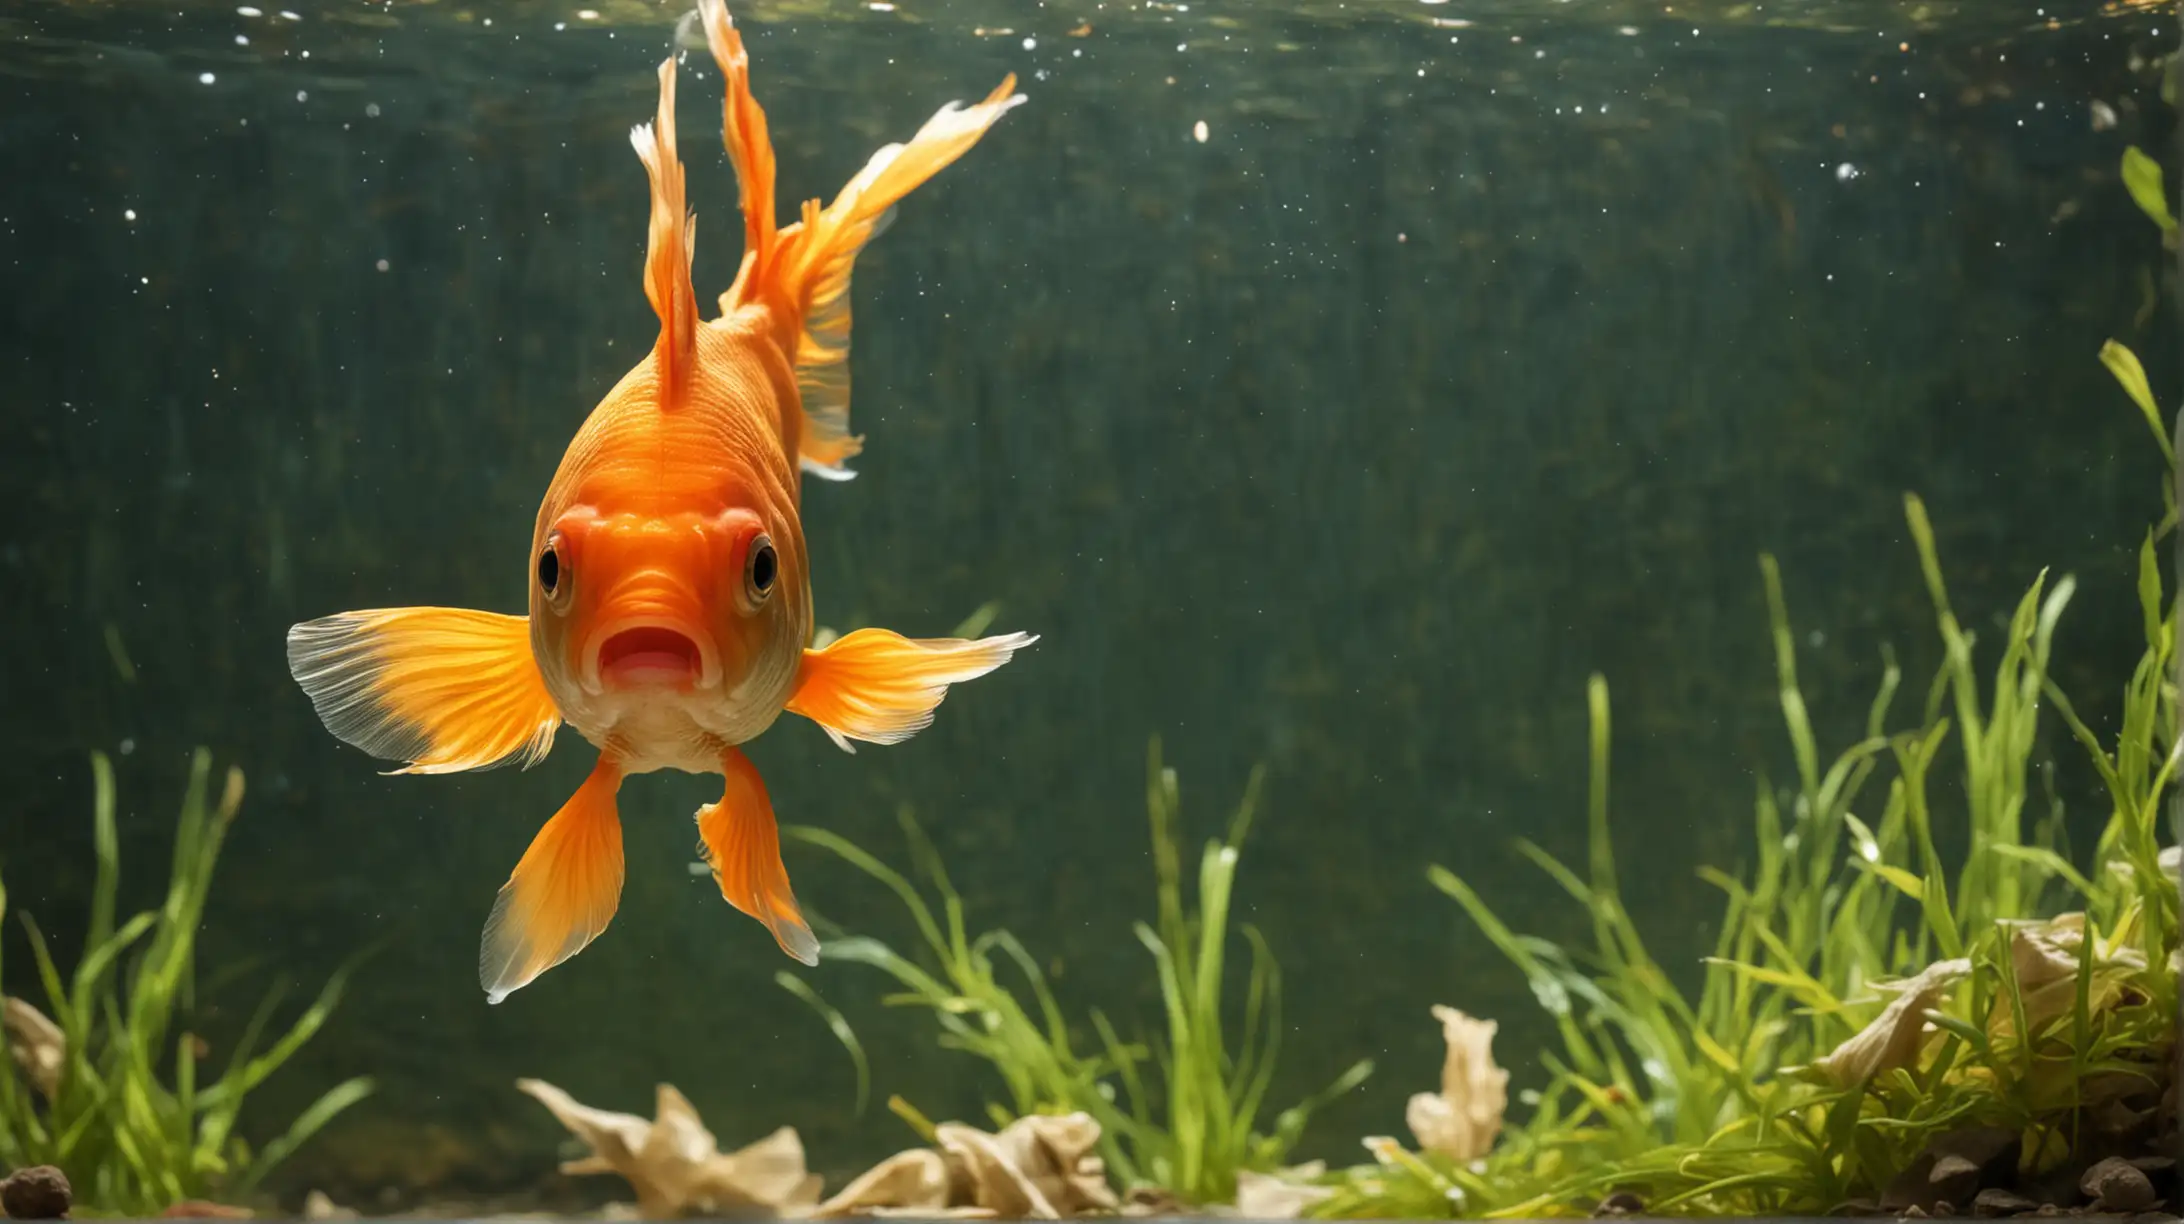 Притча.Золотая рыбка, желание и счастья! 